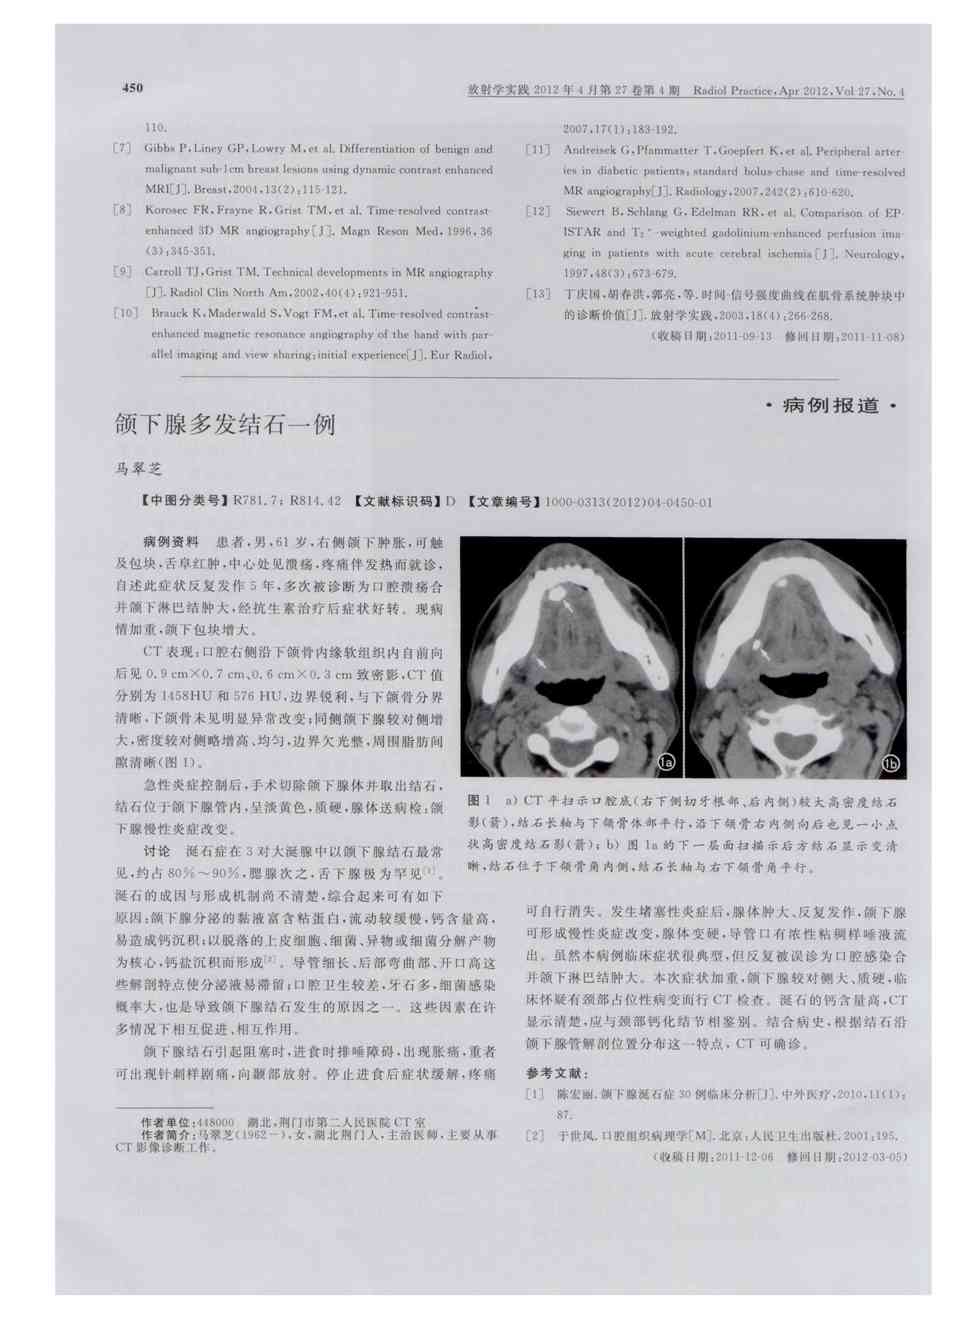 期刊颌下腺多发结石一例被引量:1   病例资料患者,男,61岁,右侧颌下